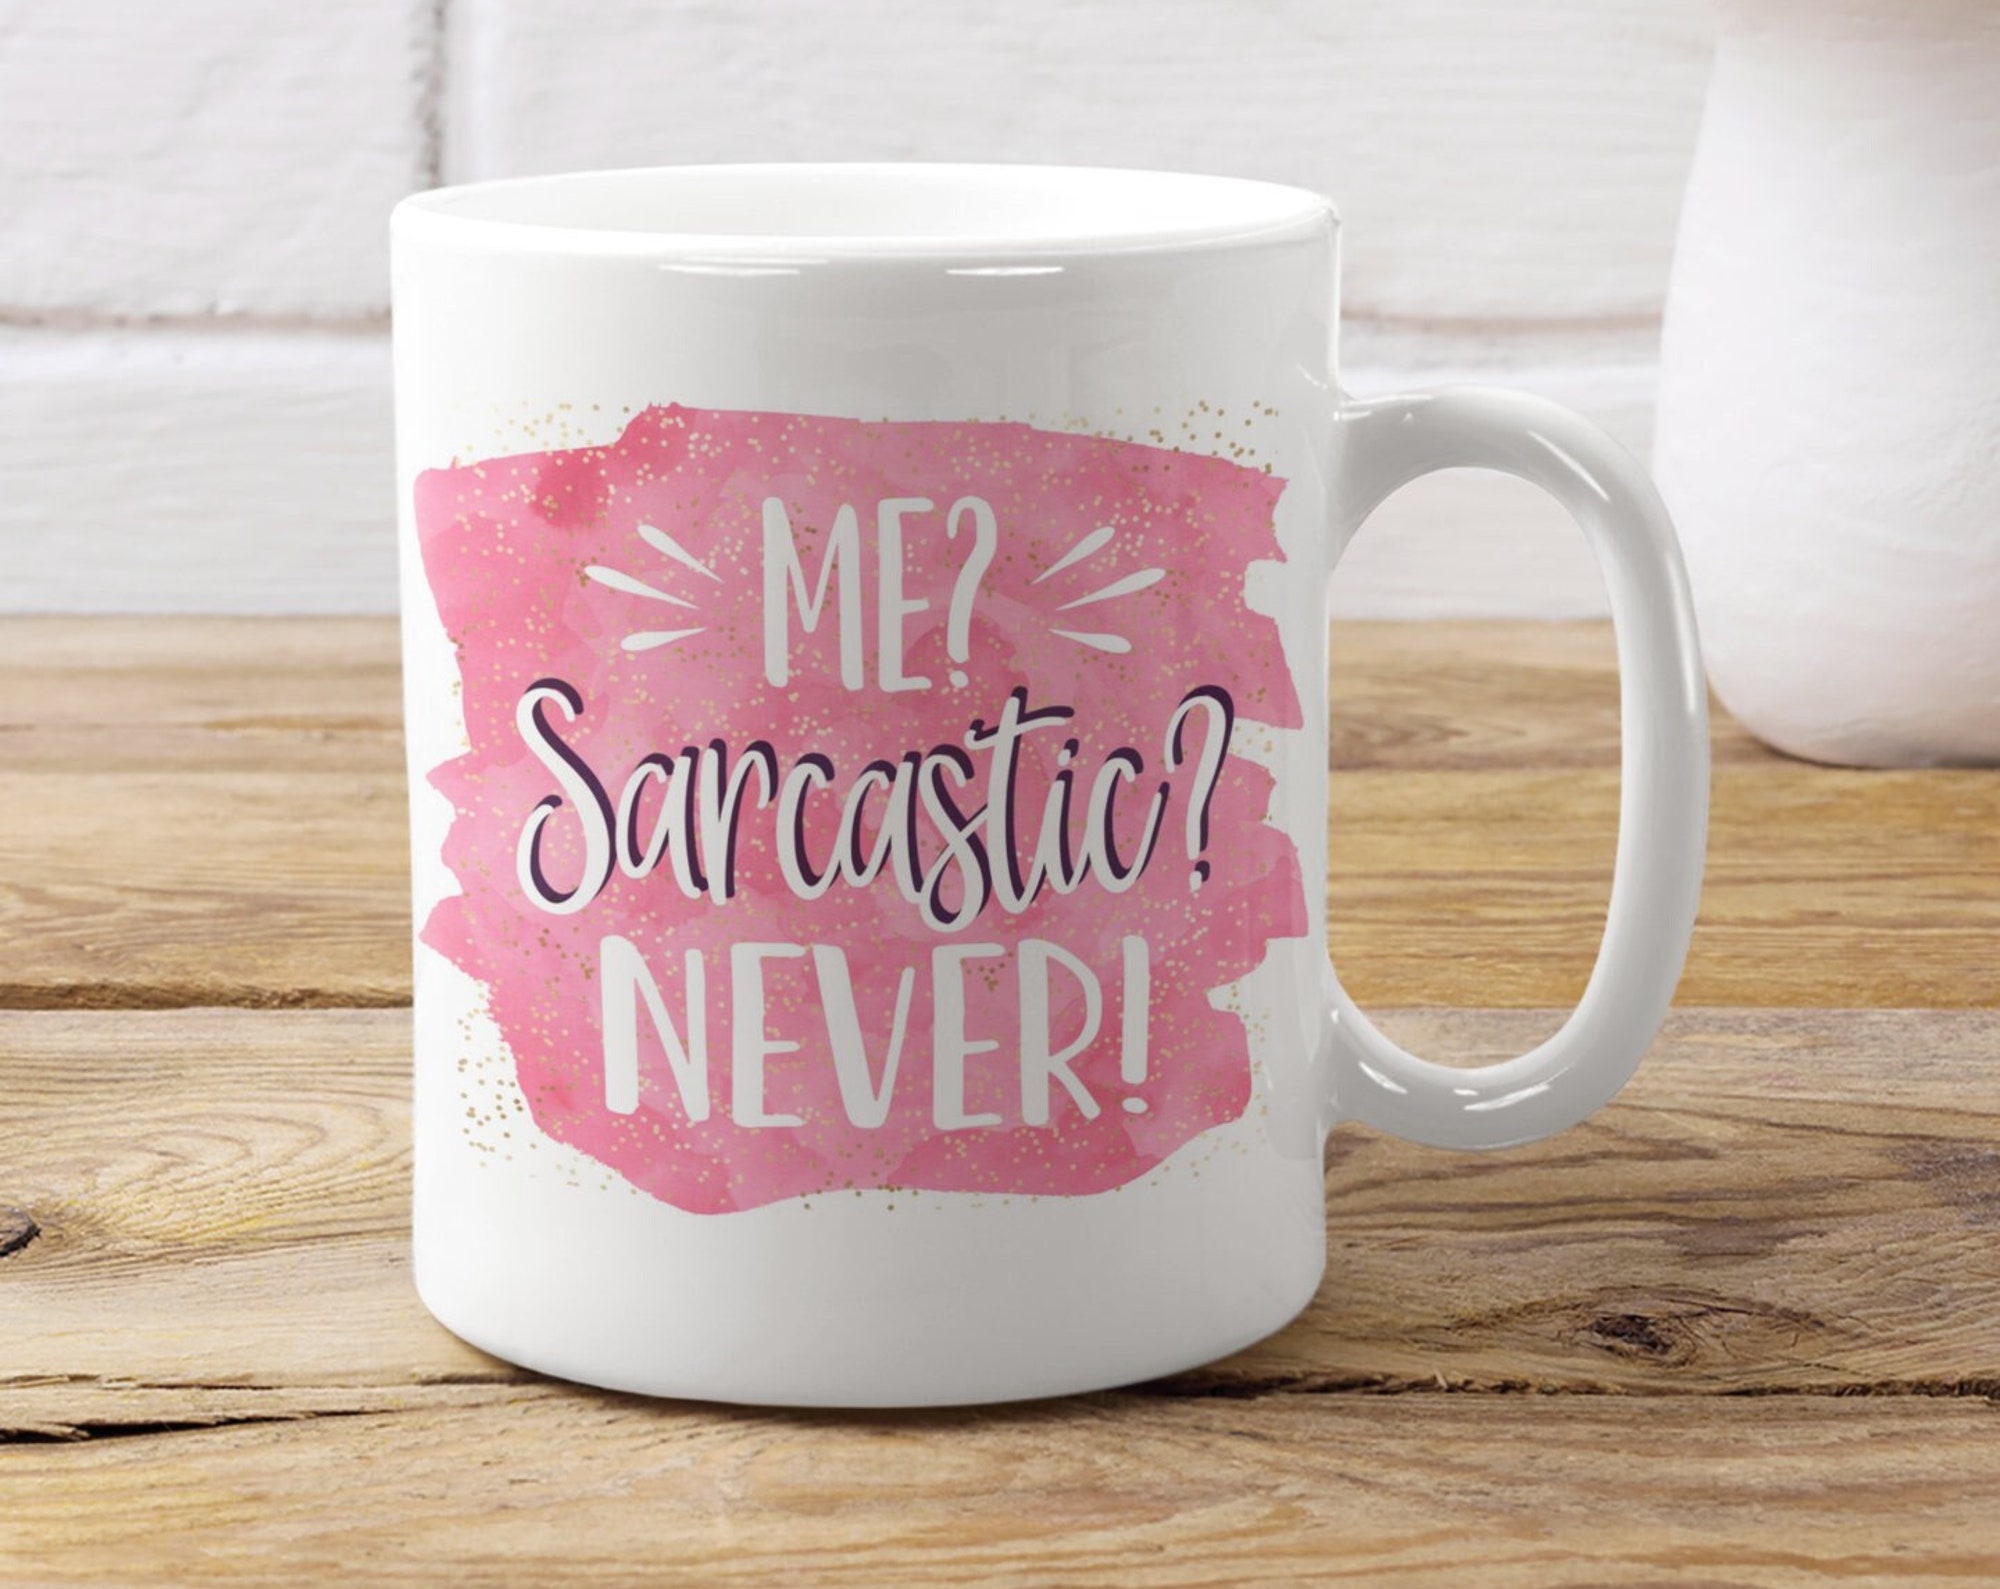 Discover Me? Sarcastic Never sarcastic mug